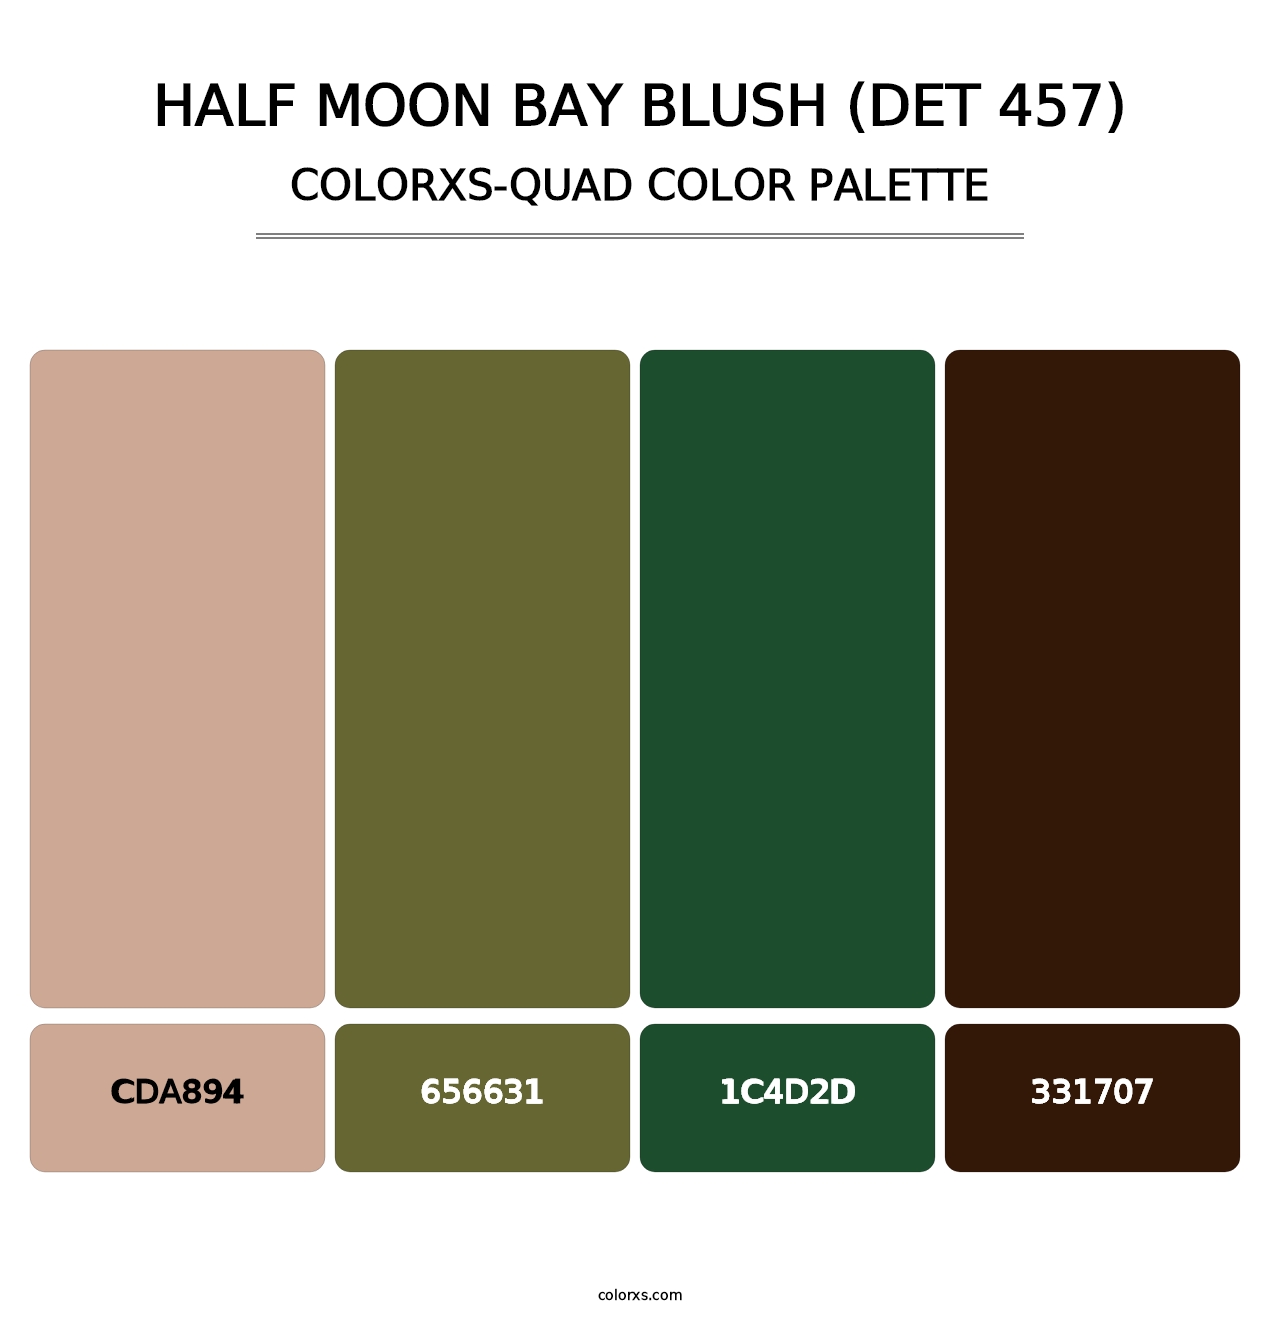 Half Moon Bay Blush (DET 457) - Colorxs Quad Palette